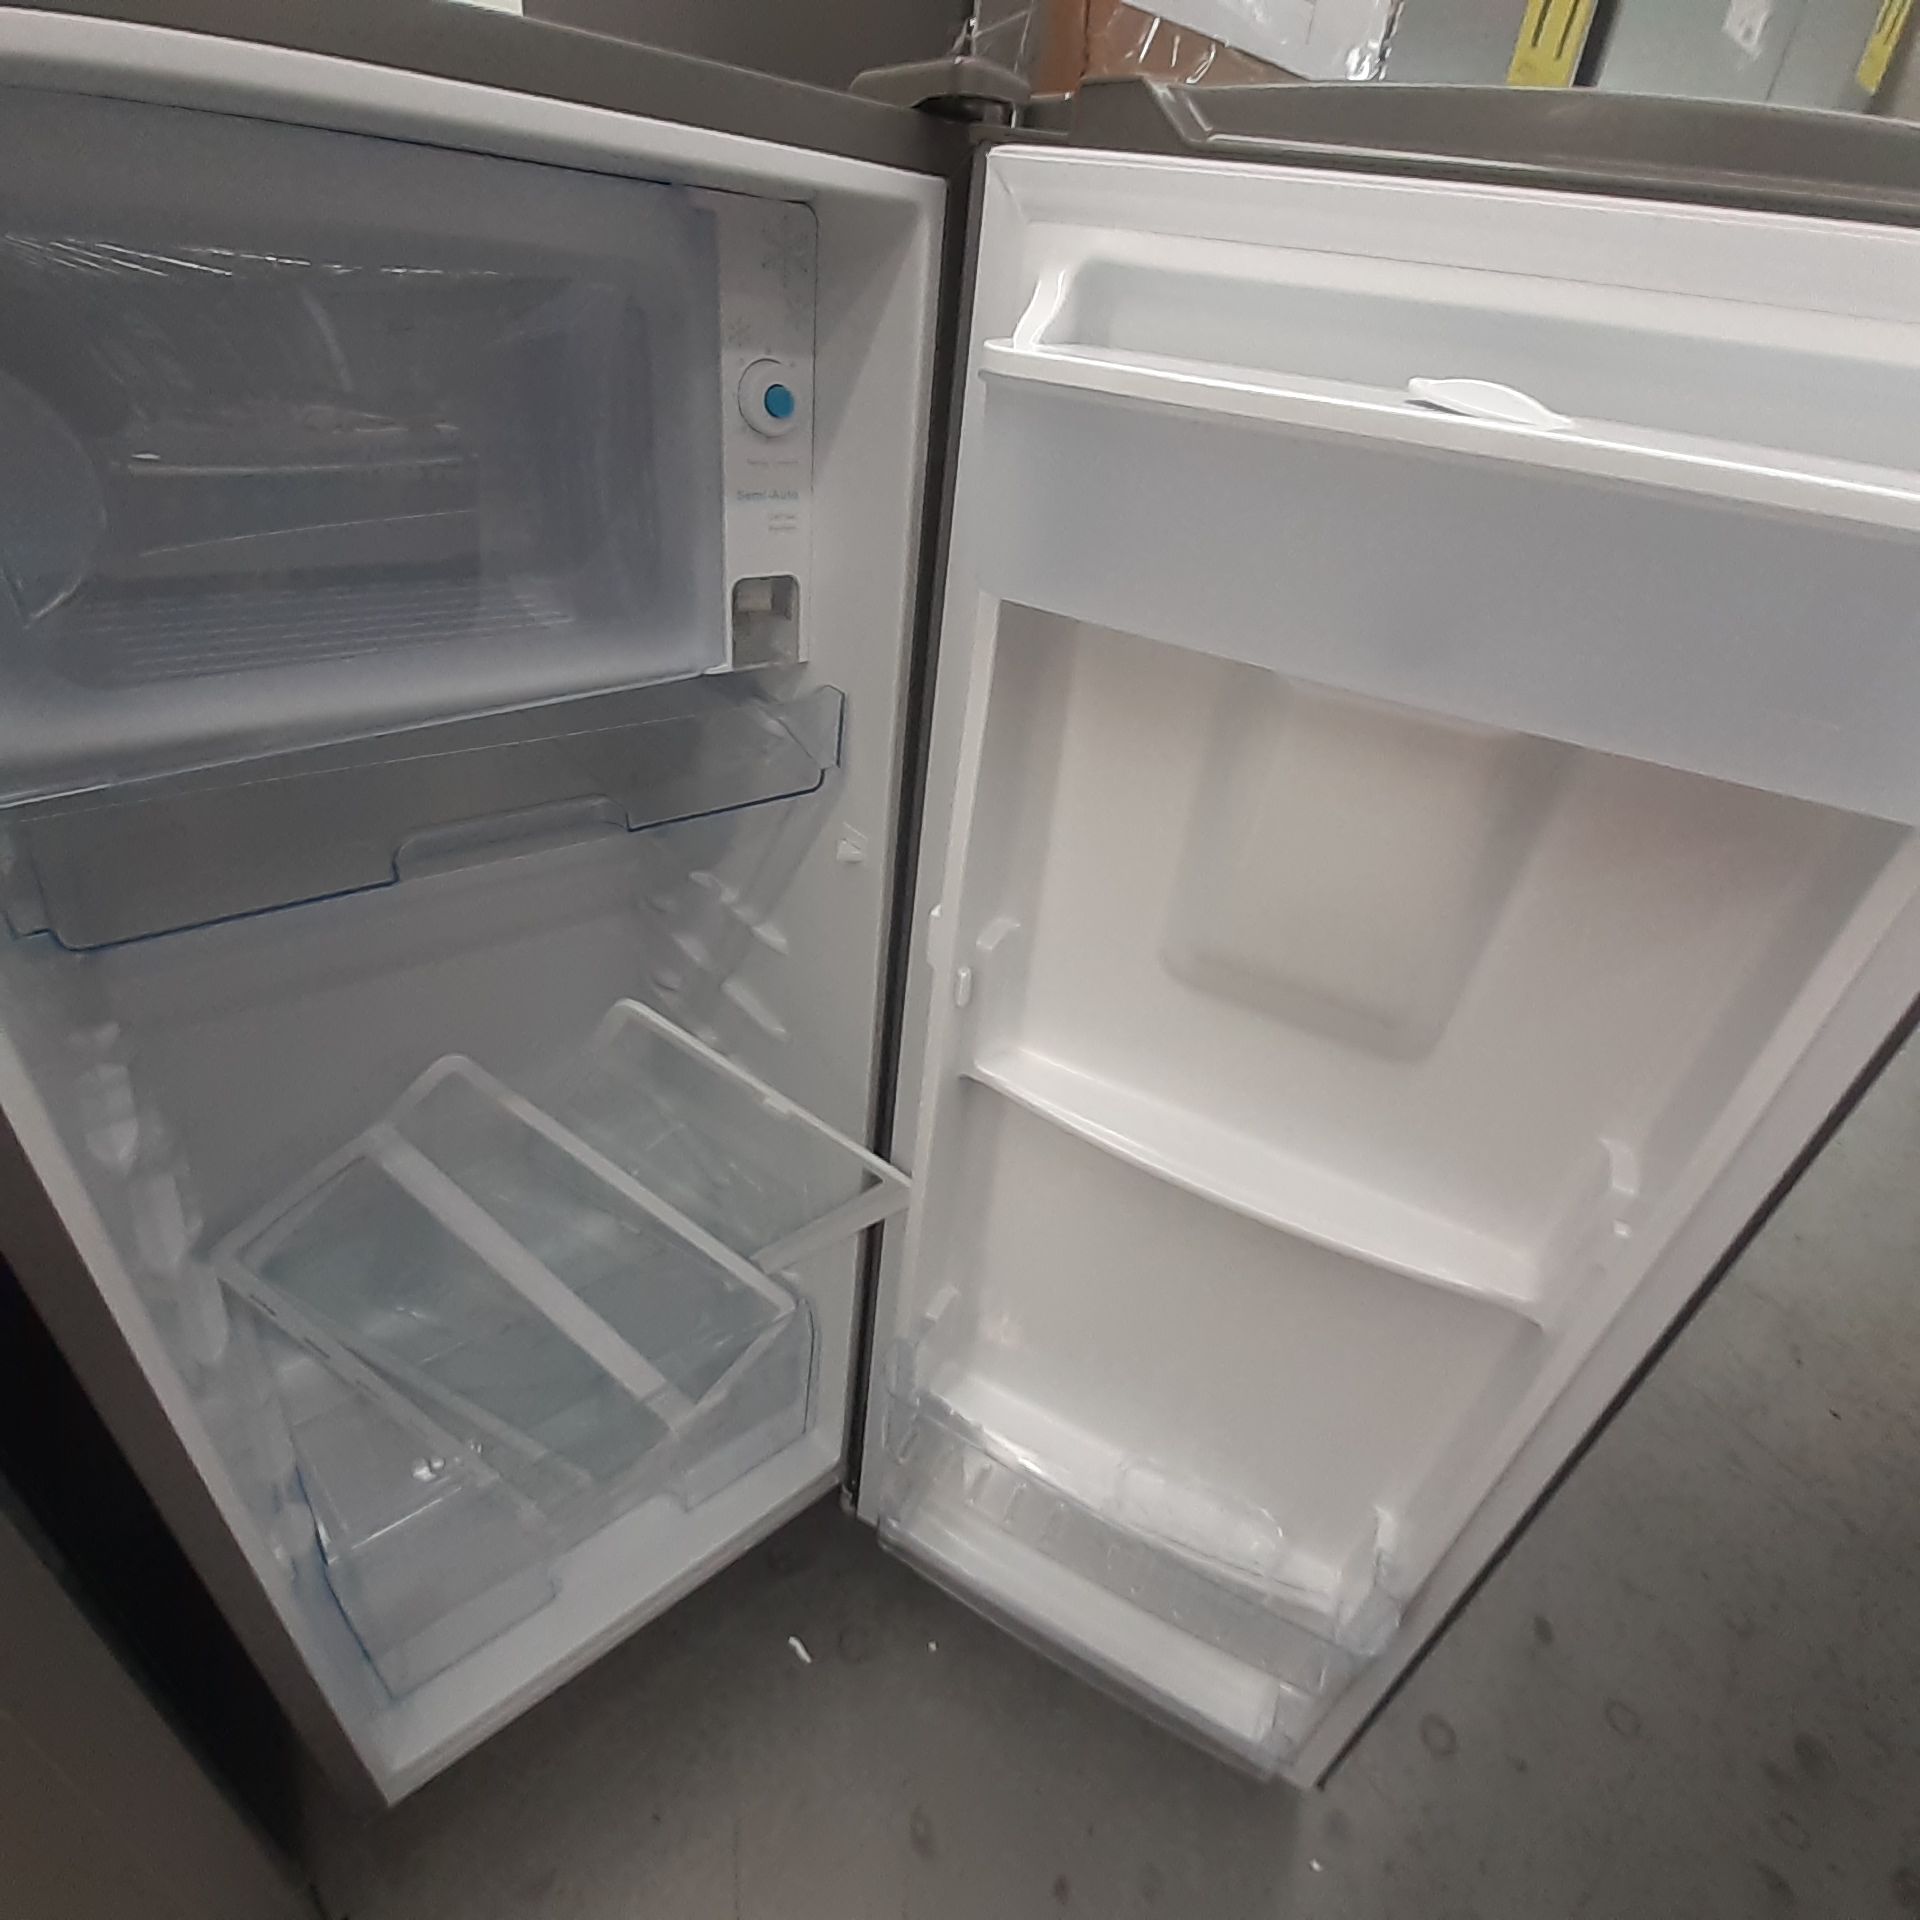 Lote De 3 Refrigeradores: 1 Refrigerador Marca Whirlpool, 1 Refrigerador Marca Mabe, 1 Refrigerador - Image 19 of 22